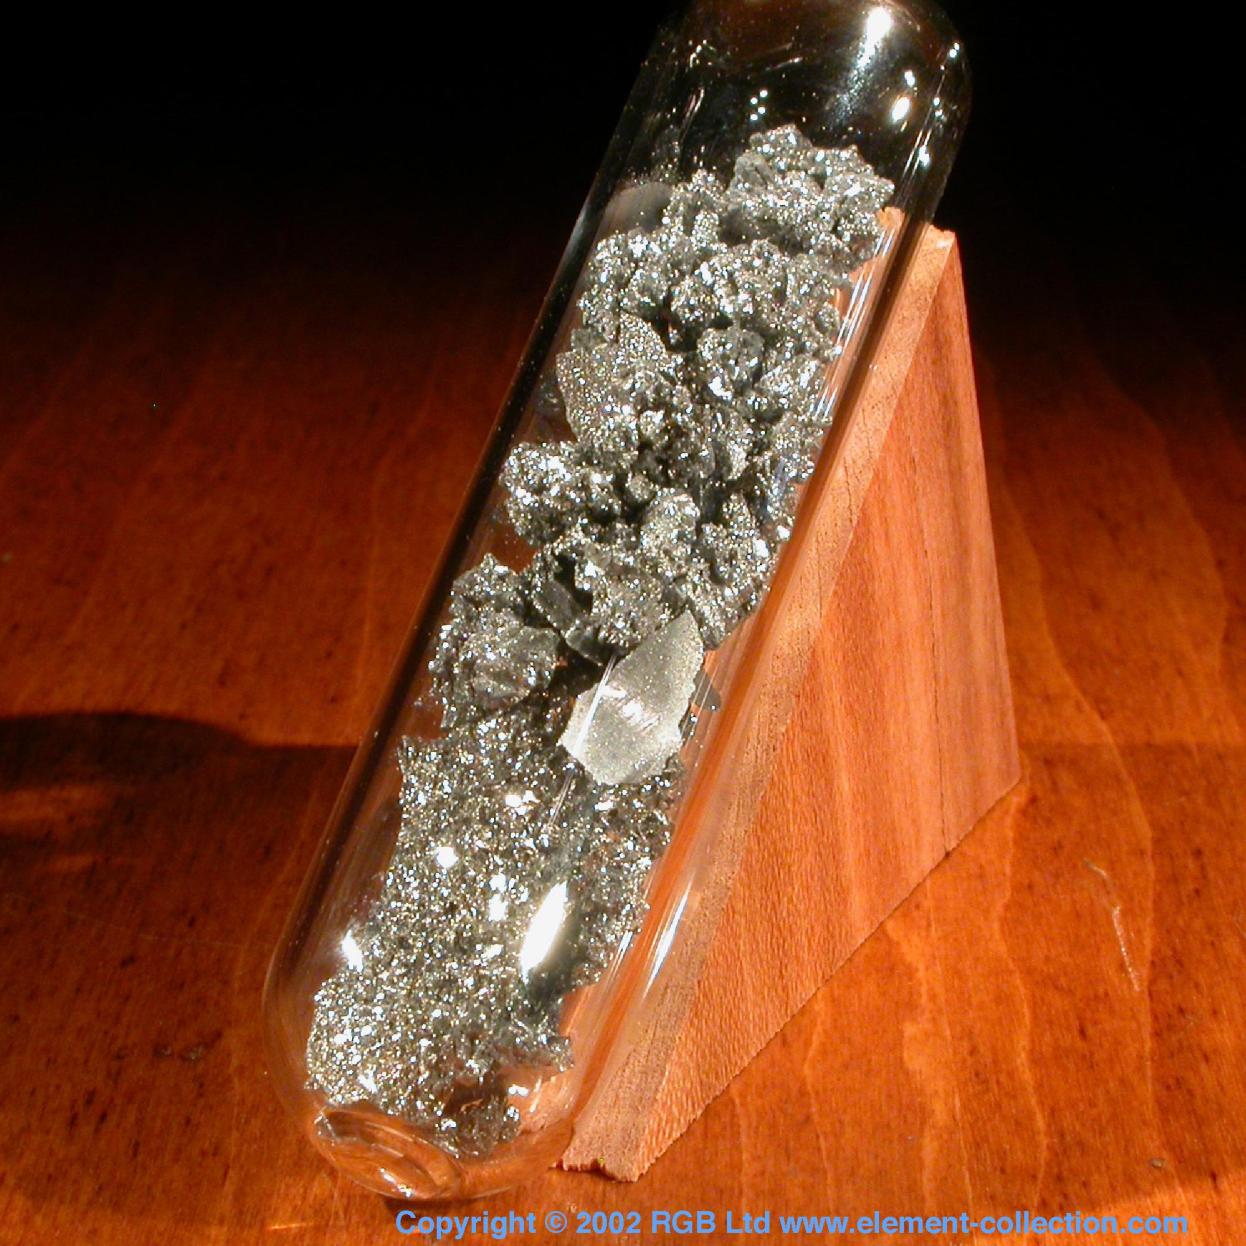 Arsenic Crystals under argon